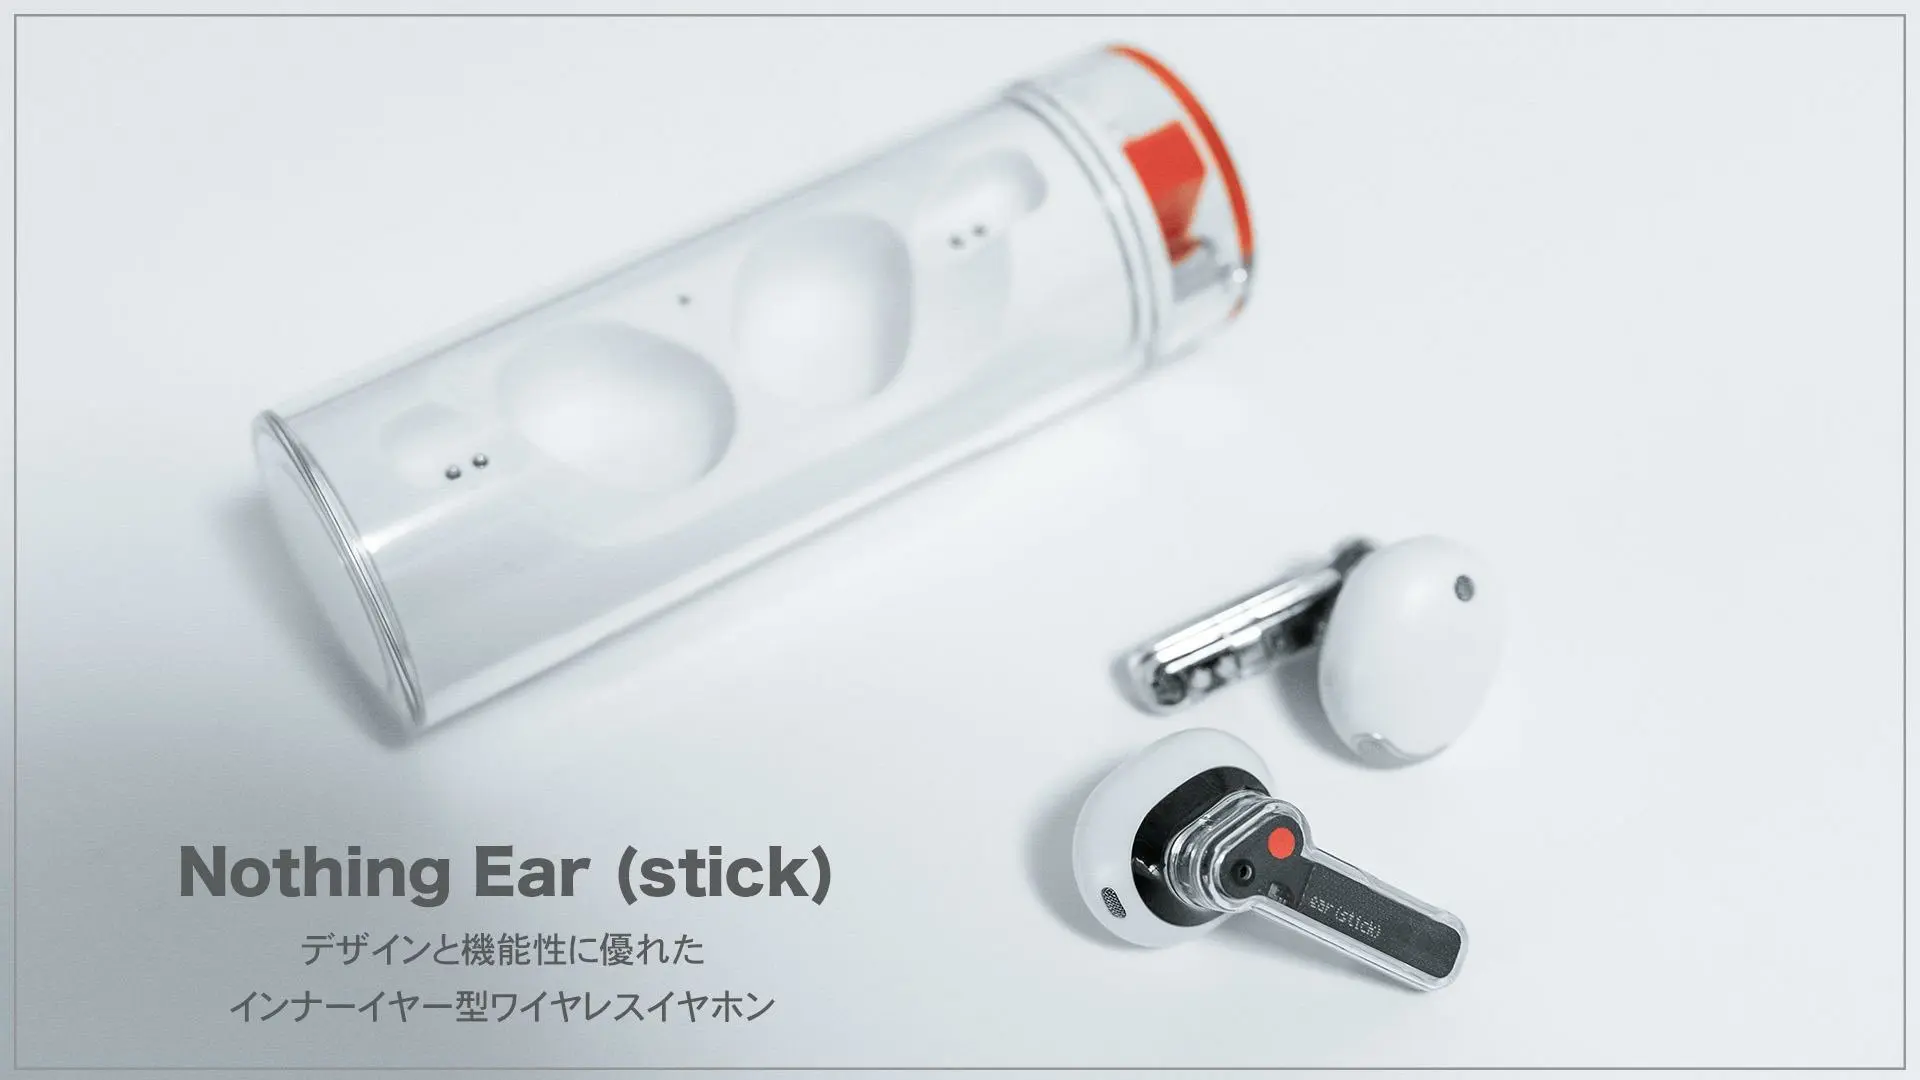 デザインと機能性に優れたワイヤレスイヤホン | Nothing Ear (stick 